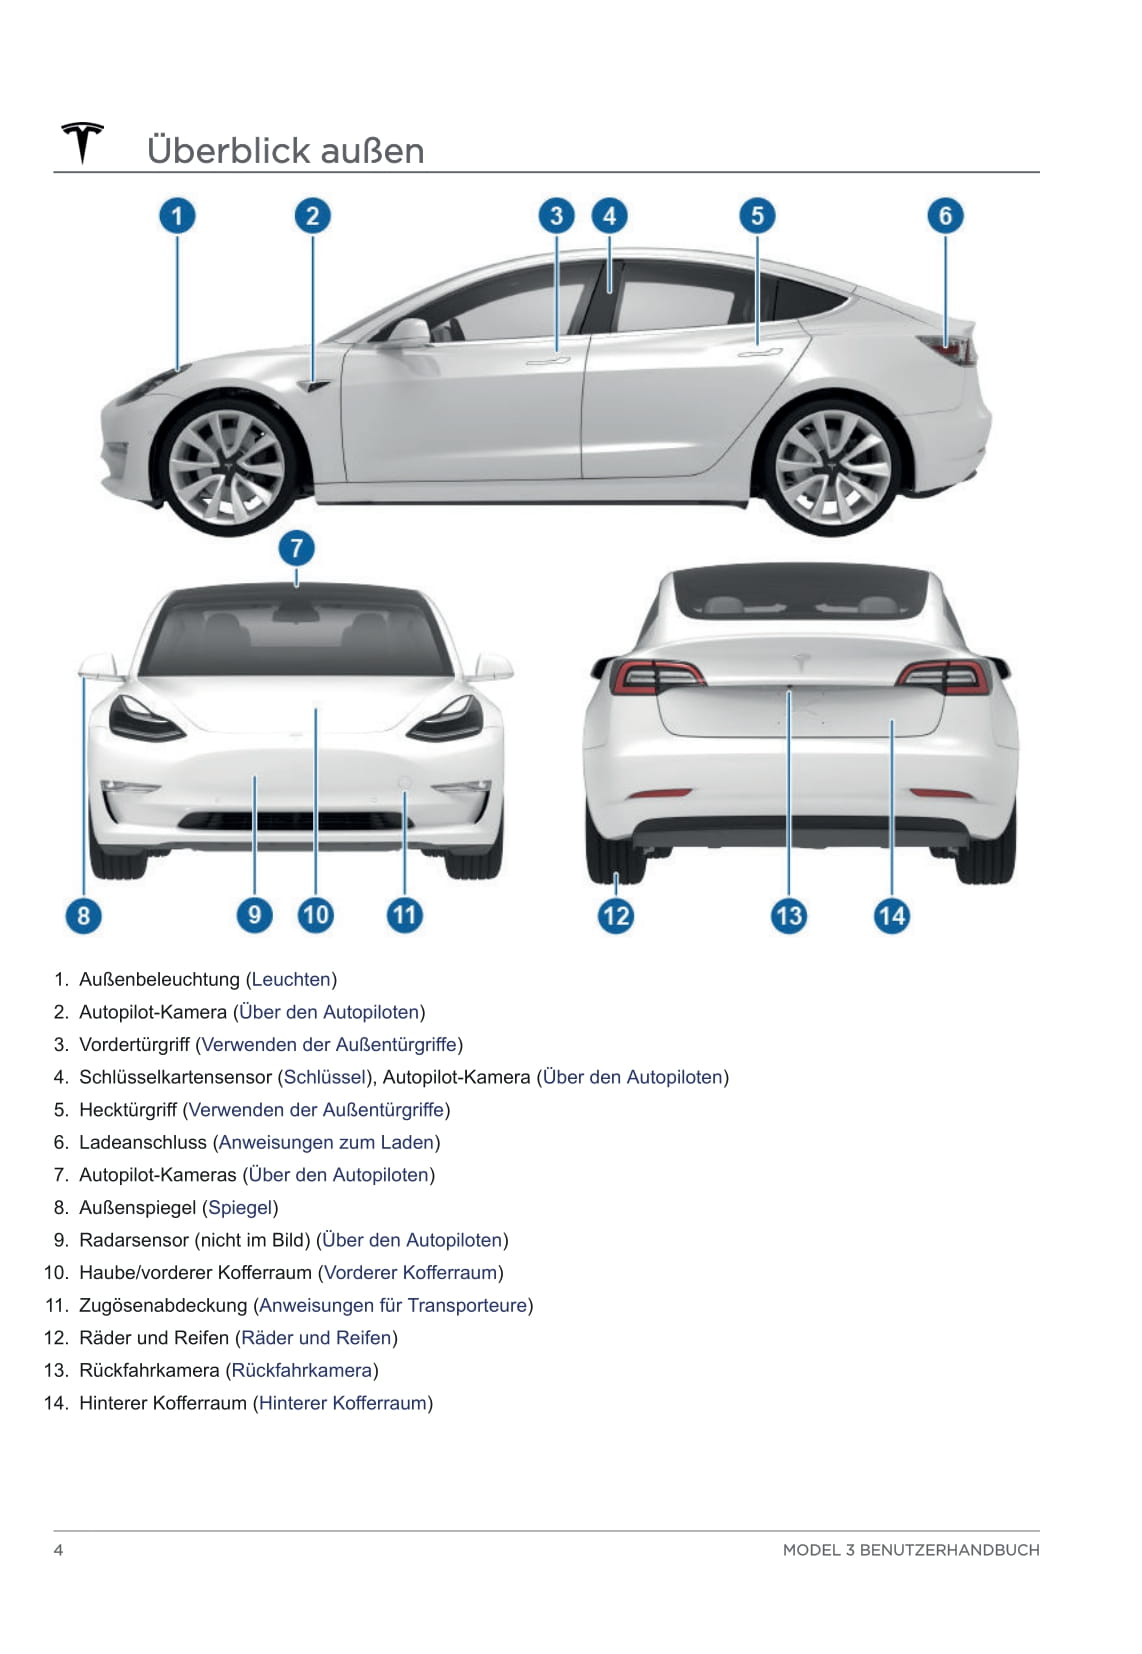 Tesla Model 3: Vermutete Schlüsselkarte nun bestätigt 